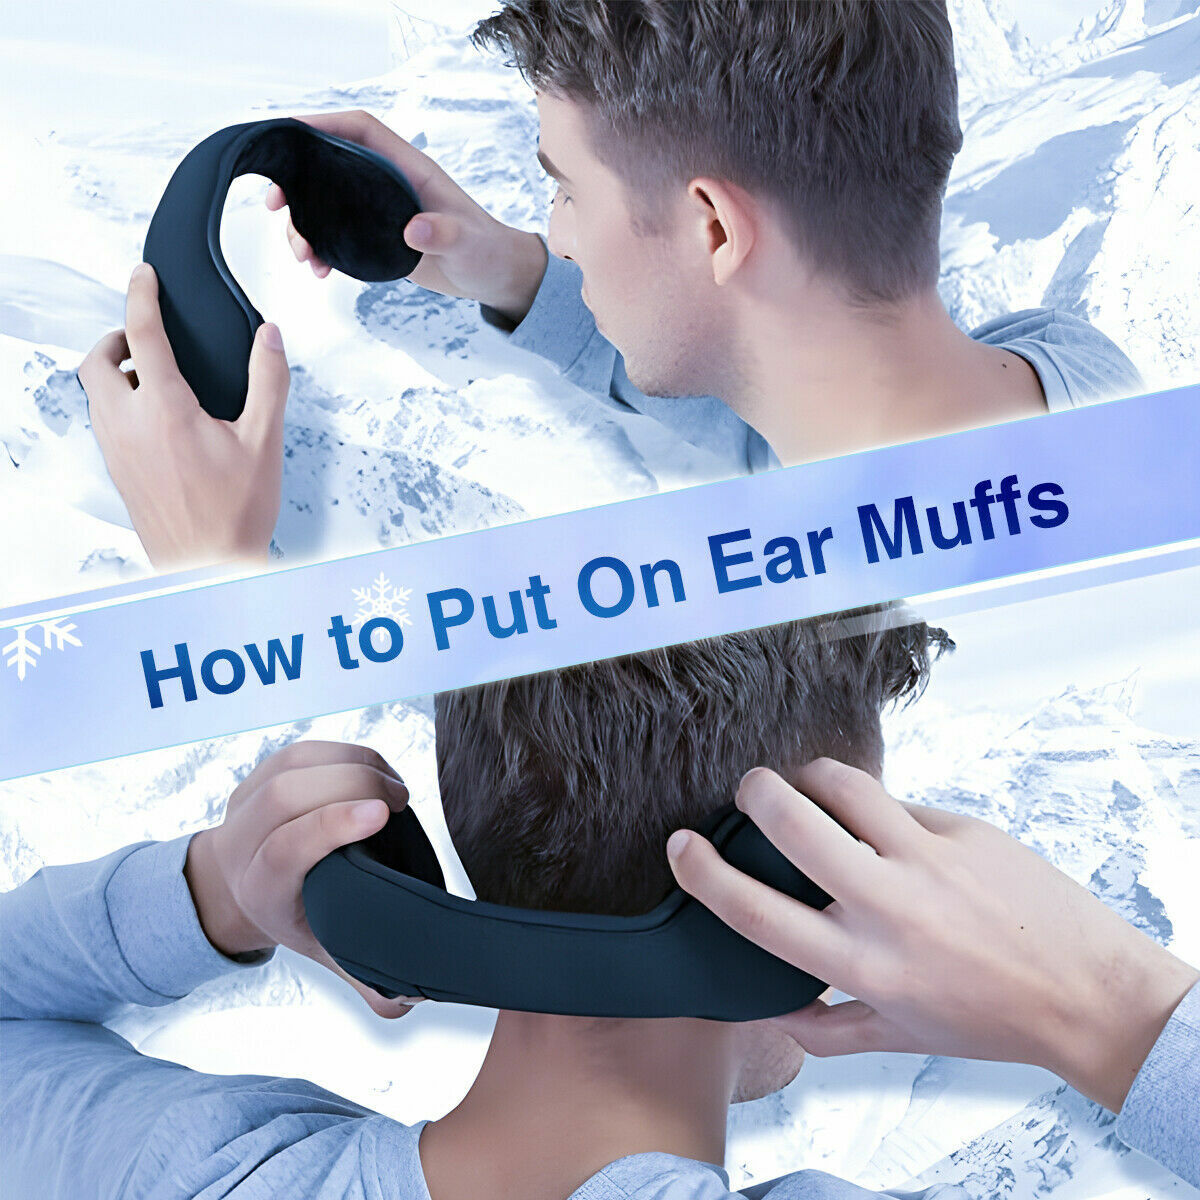 2 x Men Women Ear Muffs Winter Ear warmers Fleece Earwarmer Behind the Head Band Unbranded Does not apply - фотография #9